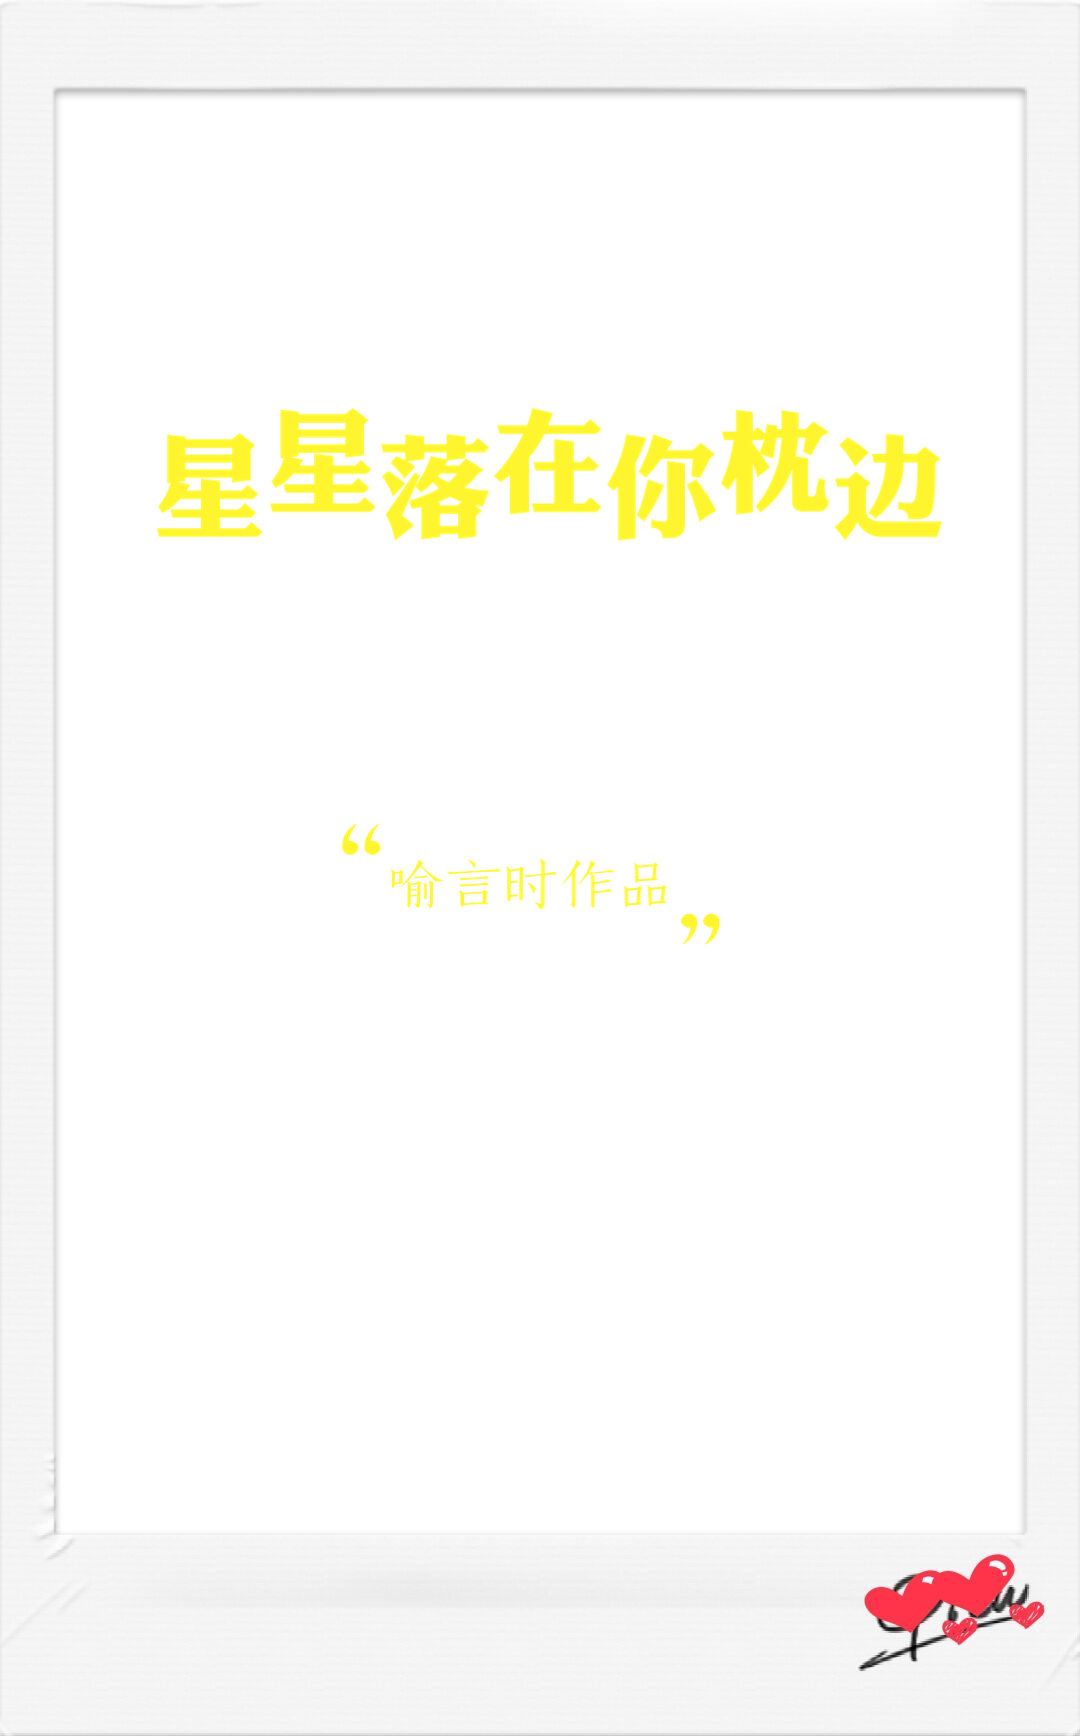 [小说]晋江VIP2019-04-06完结 总书评数：1587当前被收藏数：3938 一日，某位情感博主在微_星星落在你枕边